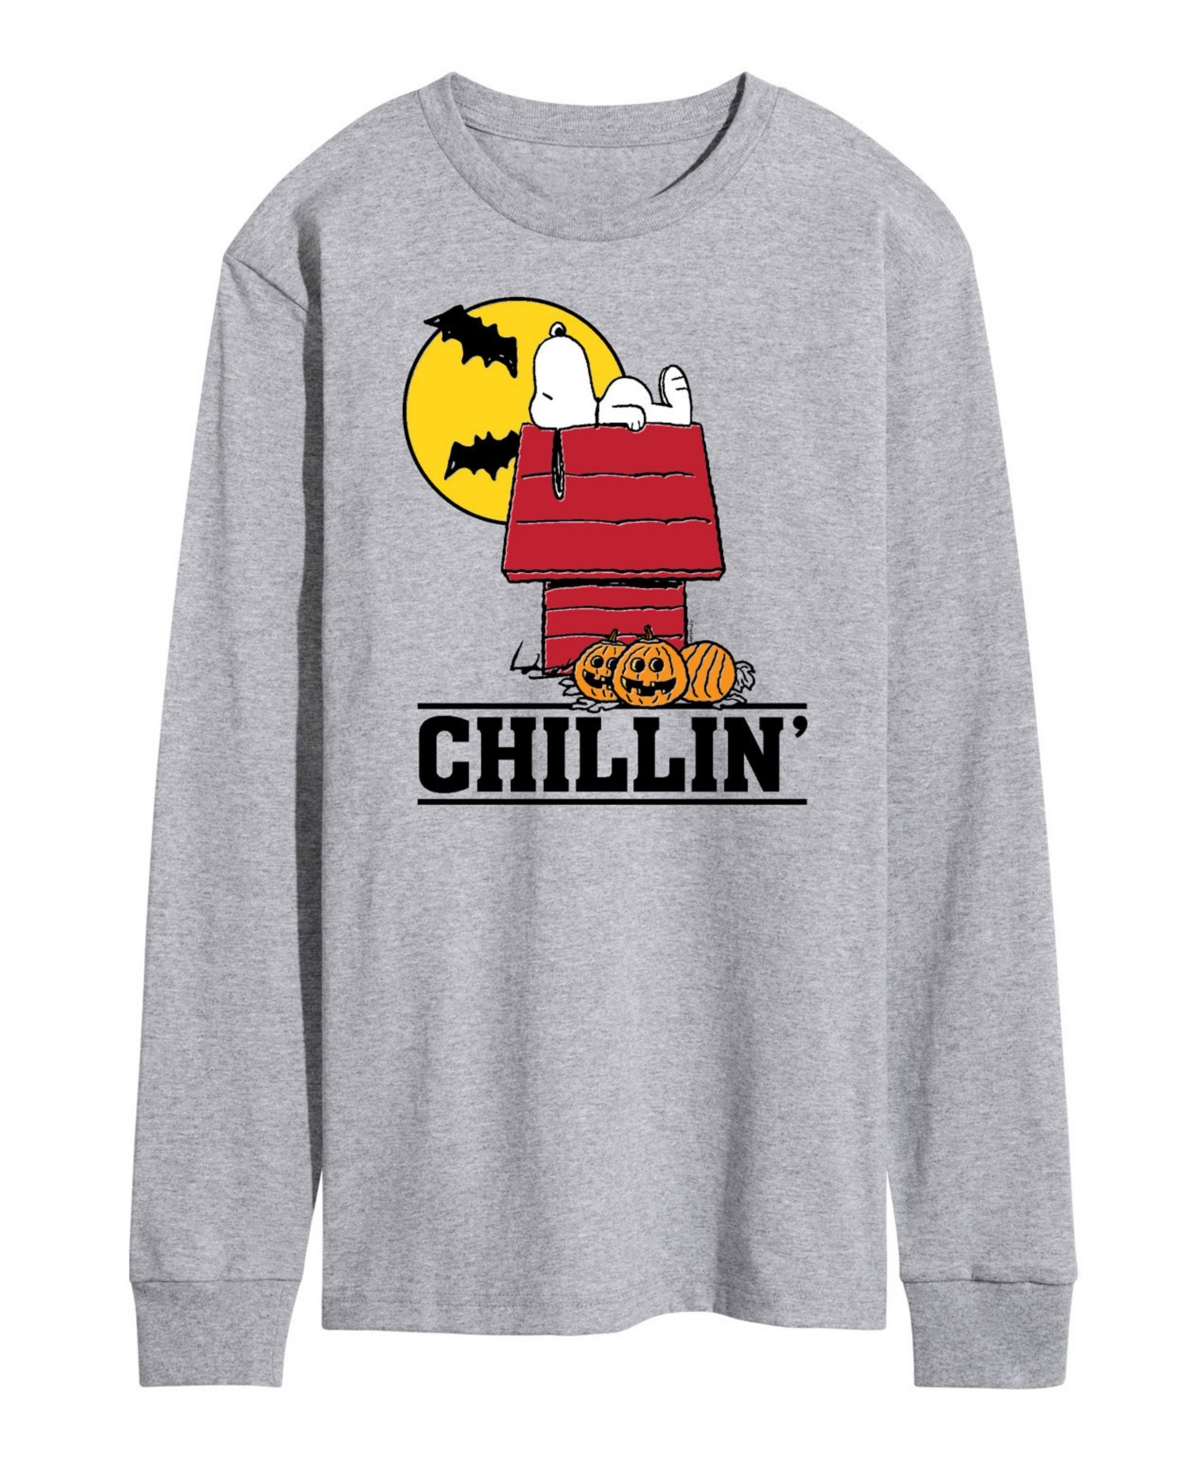 Airwaves Men's Peanuts Chillin' T-shirt